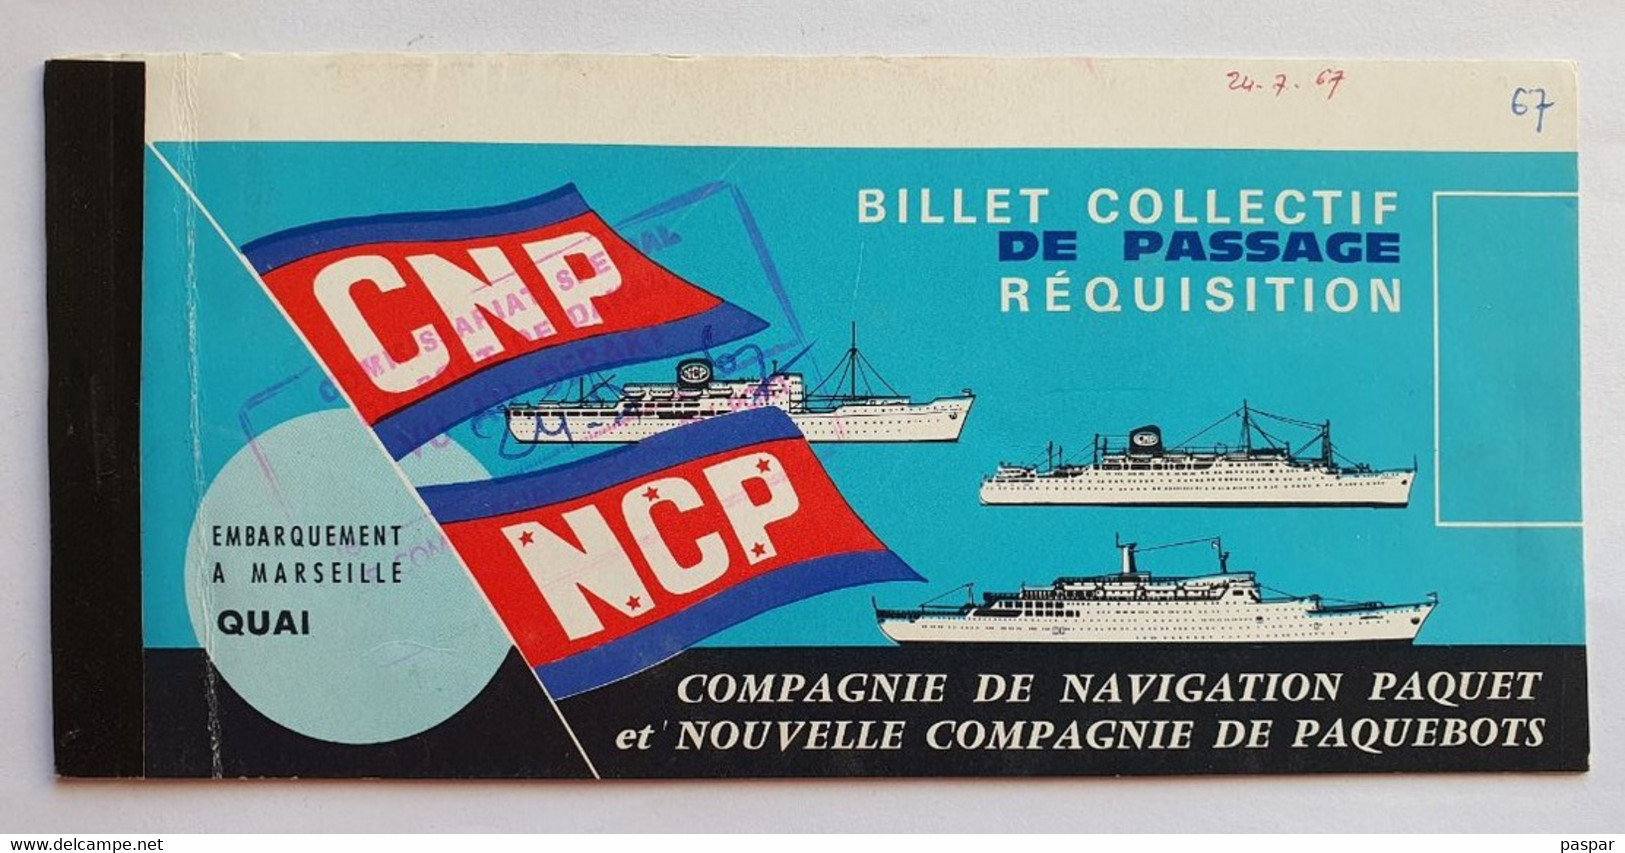 COMPAGNIE DE NAVIGATION PAQUET - Billet De Passage Réquisition DAKAR MARSEILLE - Ancerville - 1967 - Welt